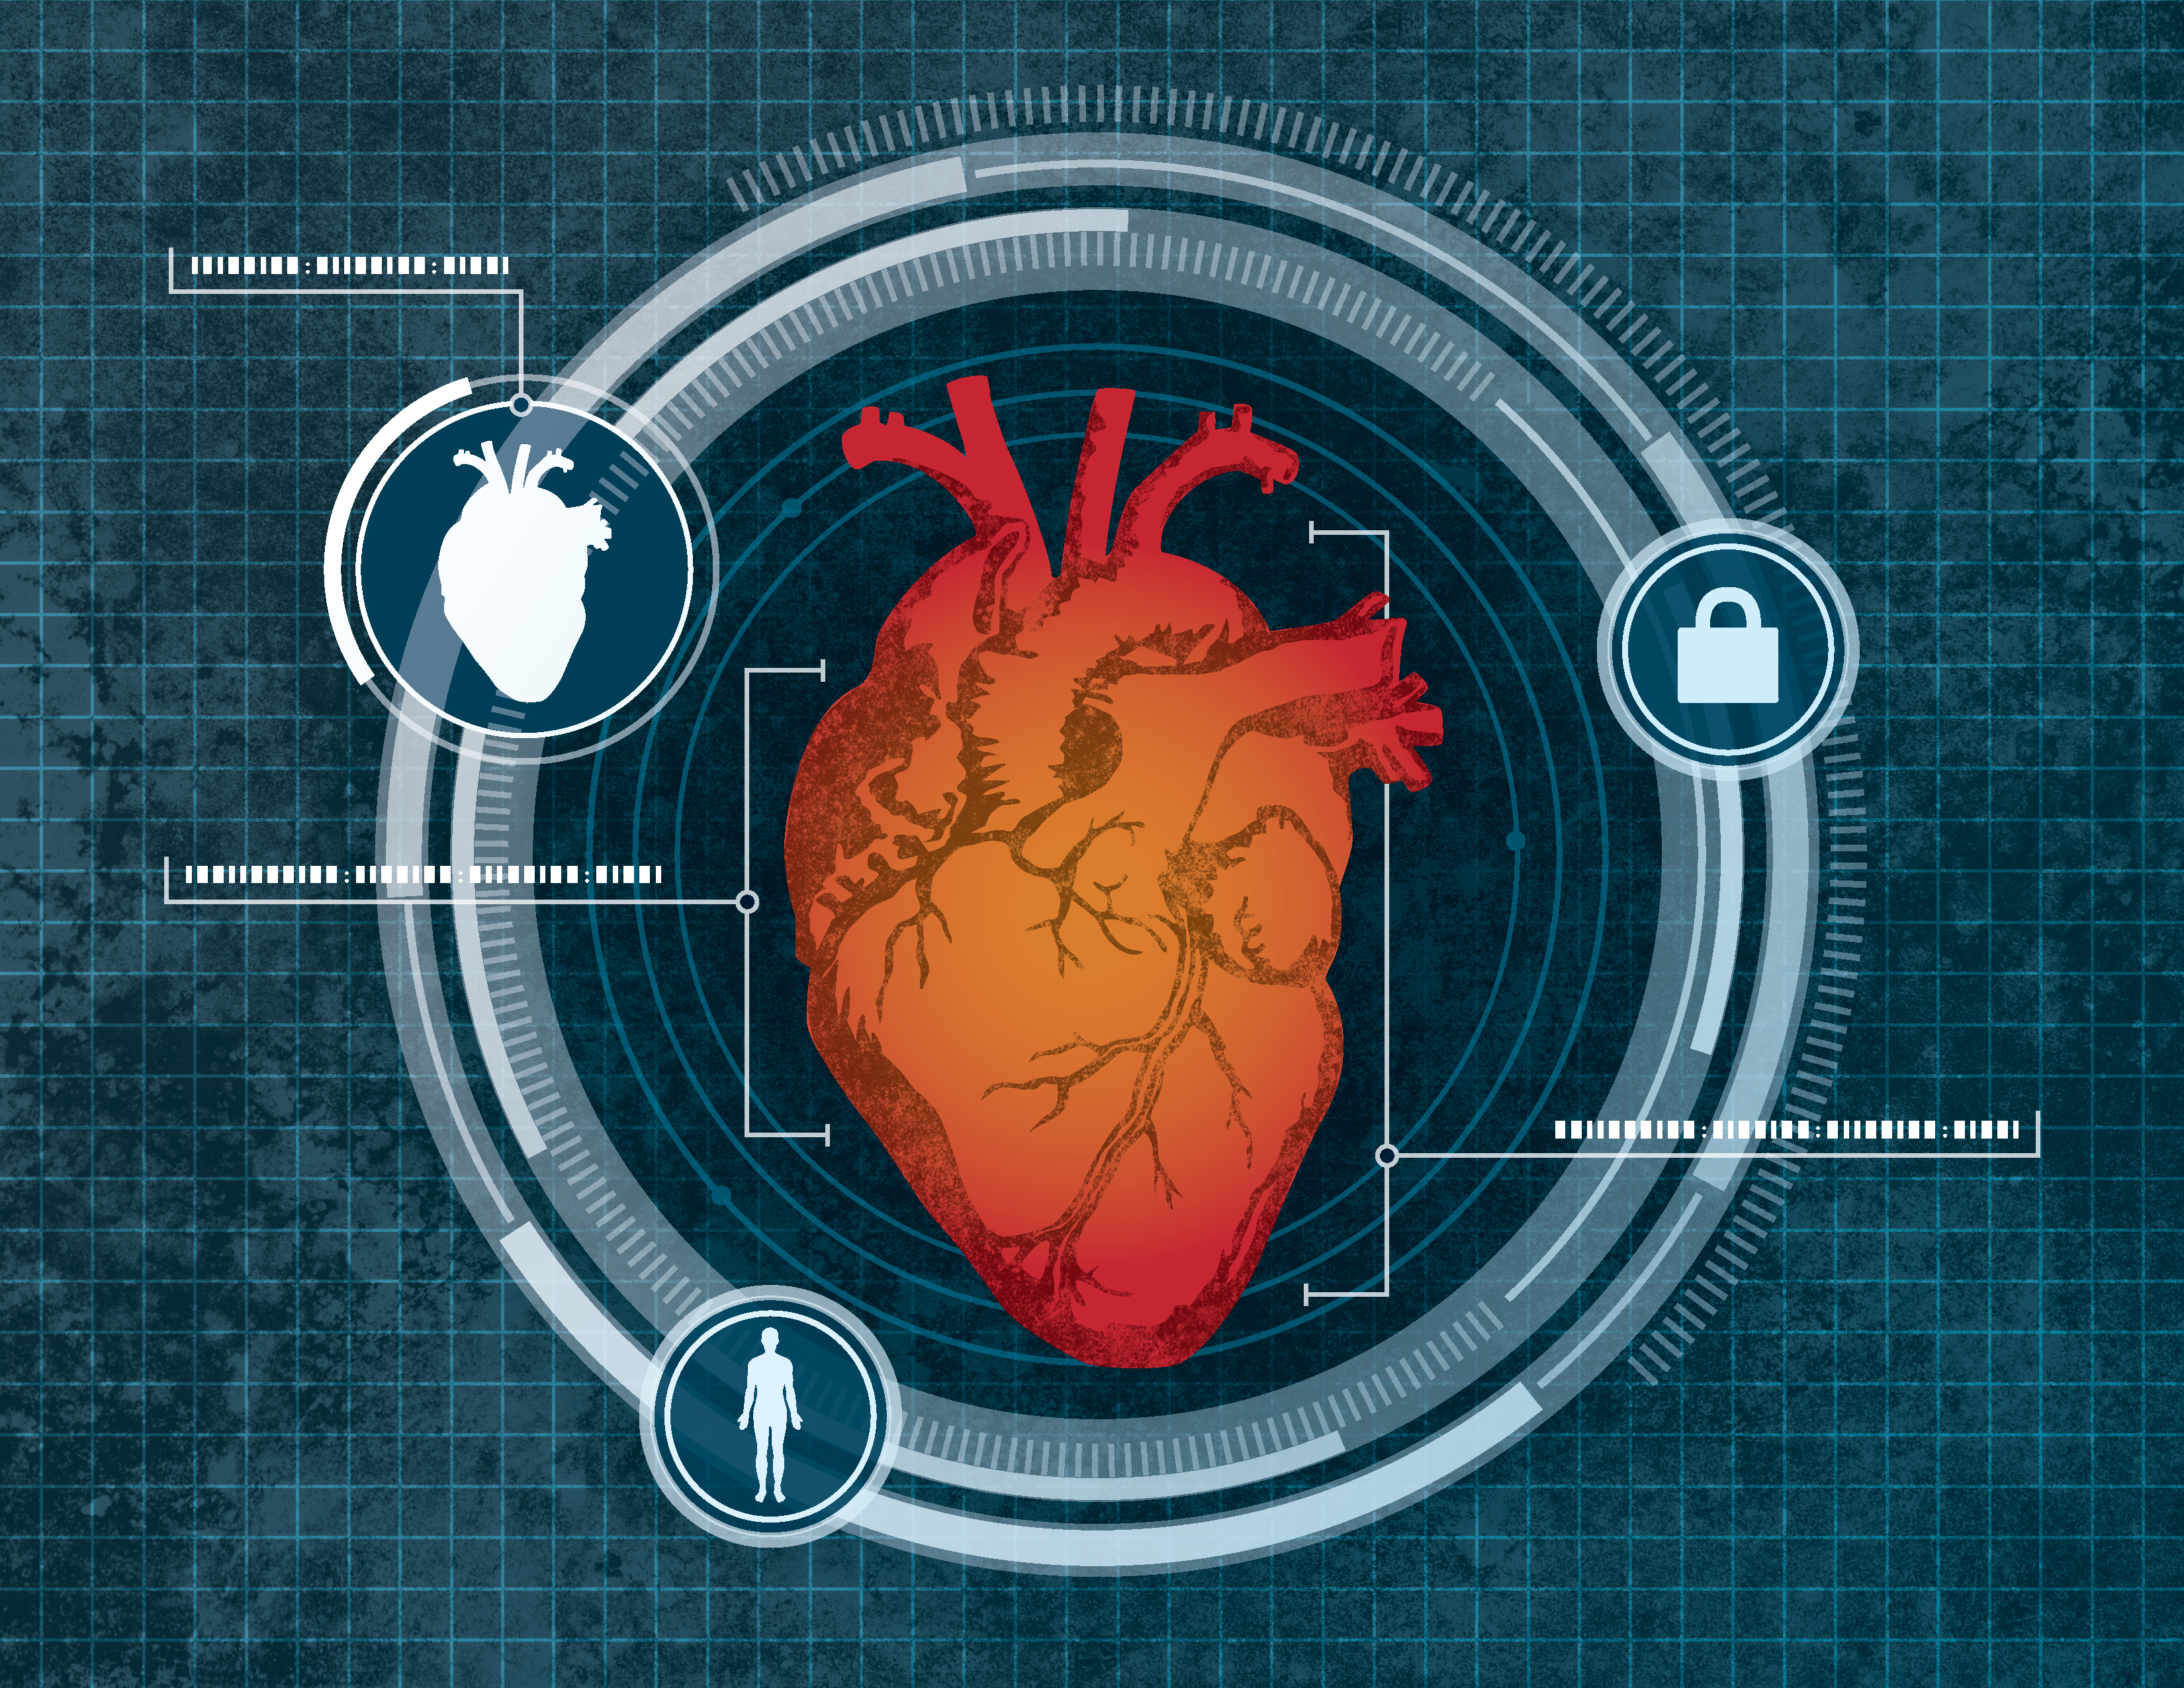 Le cœur a déjà fait l’objet de travaux sur la biométrie, plus précisément sur la fréquence cardiaque propre à chaque individu. Cardiac Scan se focalise sur la géométrie de cet organe vital. © University at Buffalo